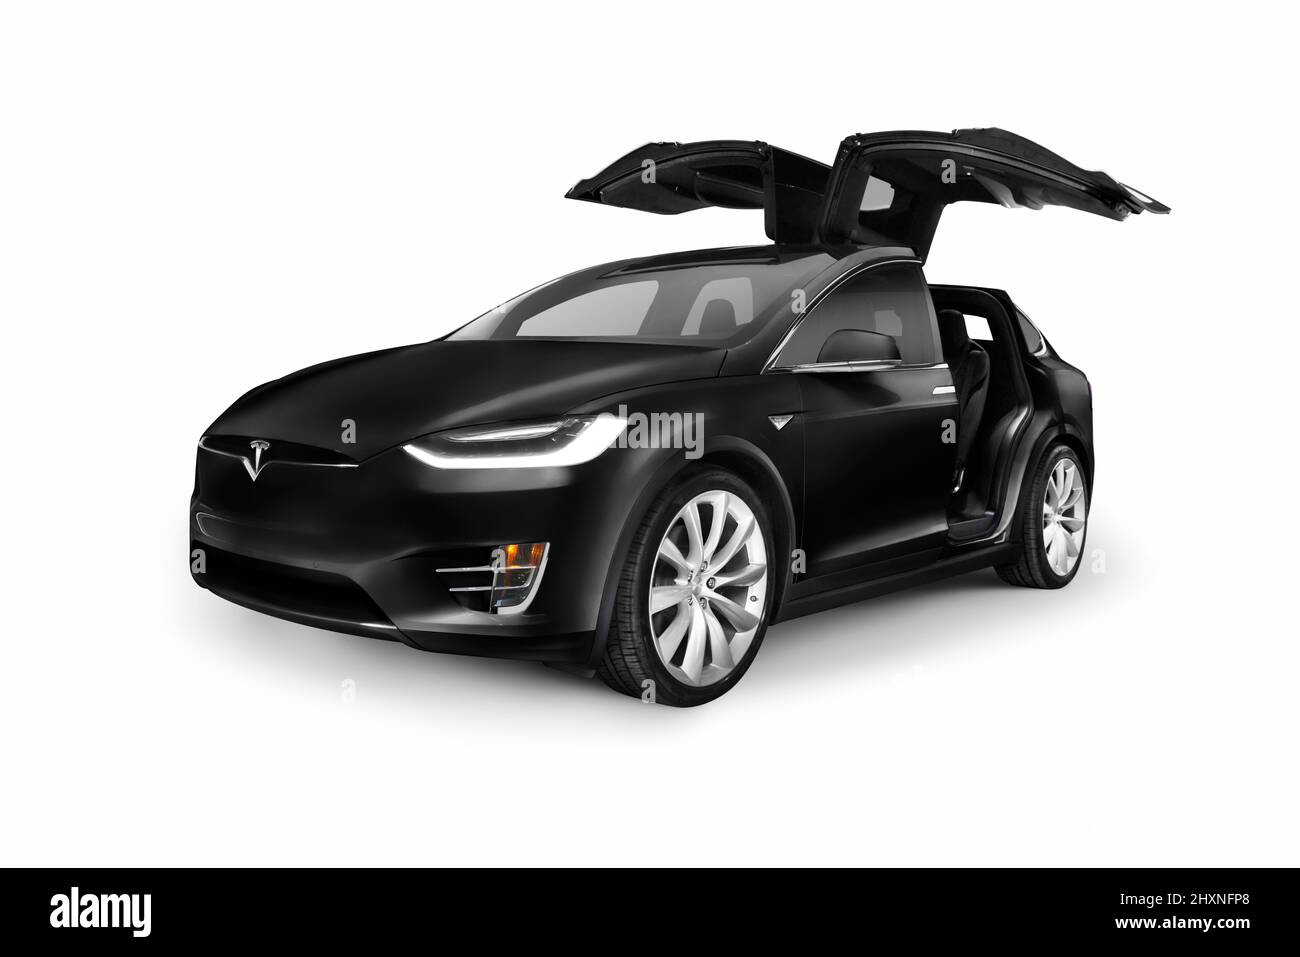 Coche eléctrico SUV de lujo Tesla X negro con puertas de ala de halcón abiertas aisladas sobre fondo blanco Foto de stock